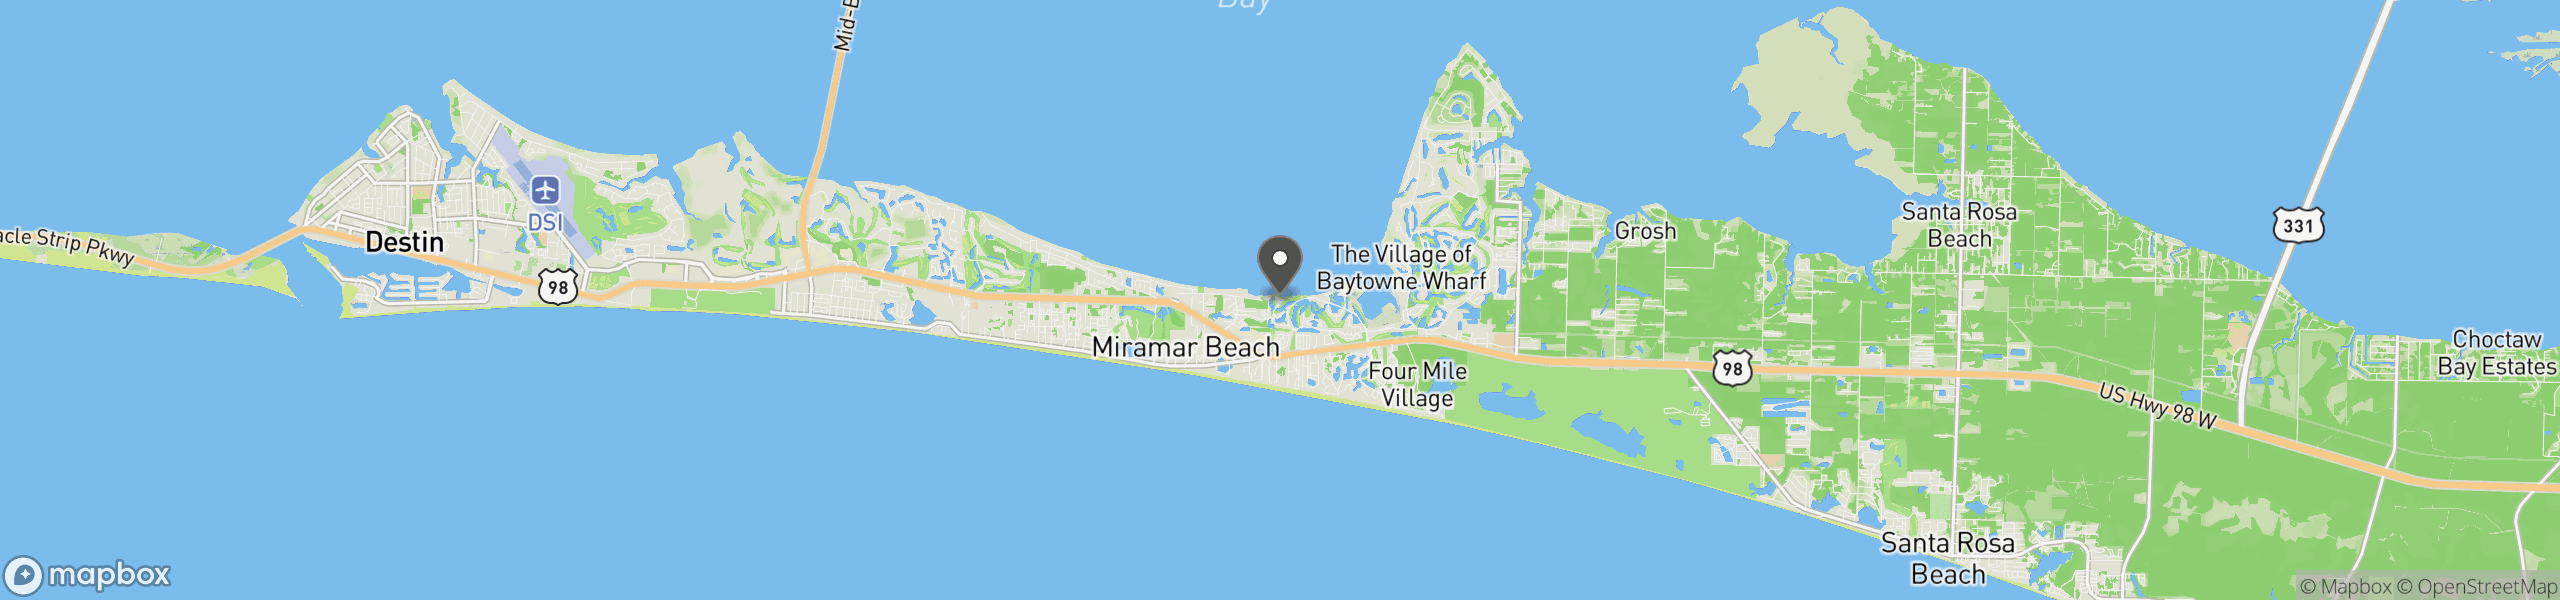 Miramar Beach, FL